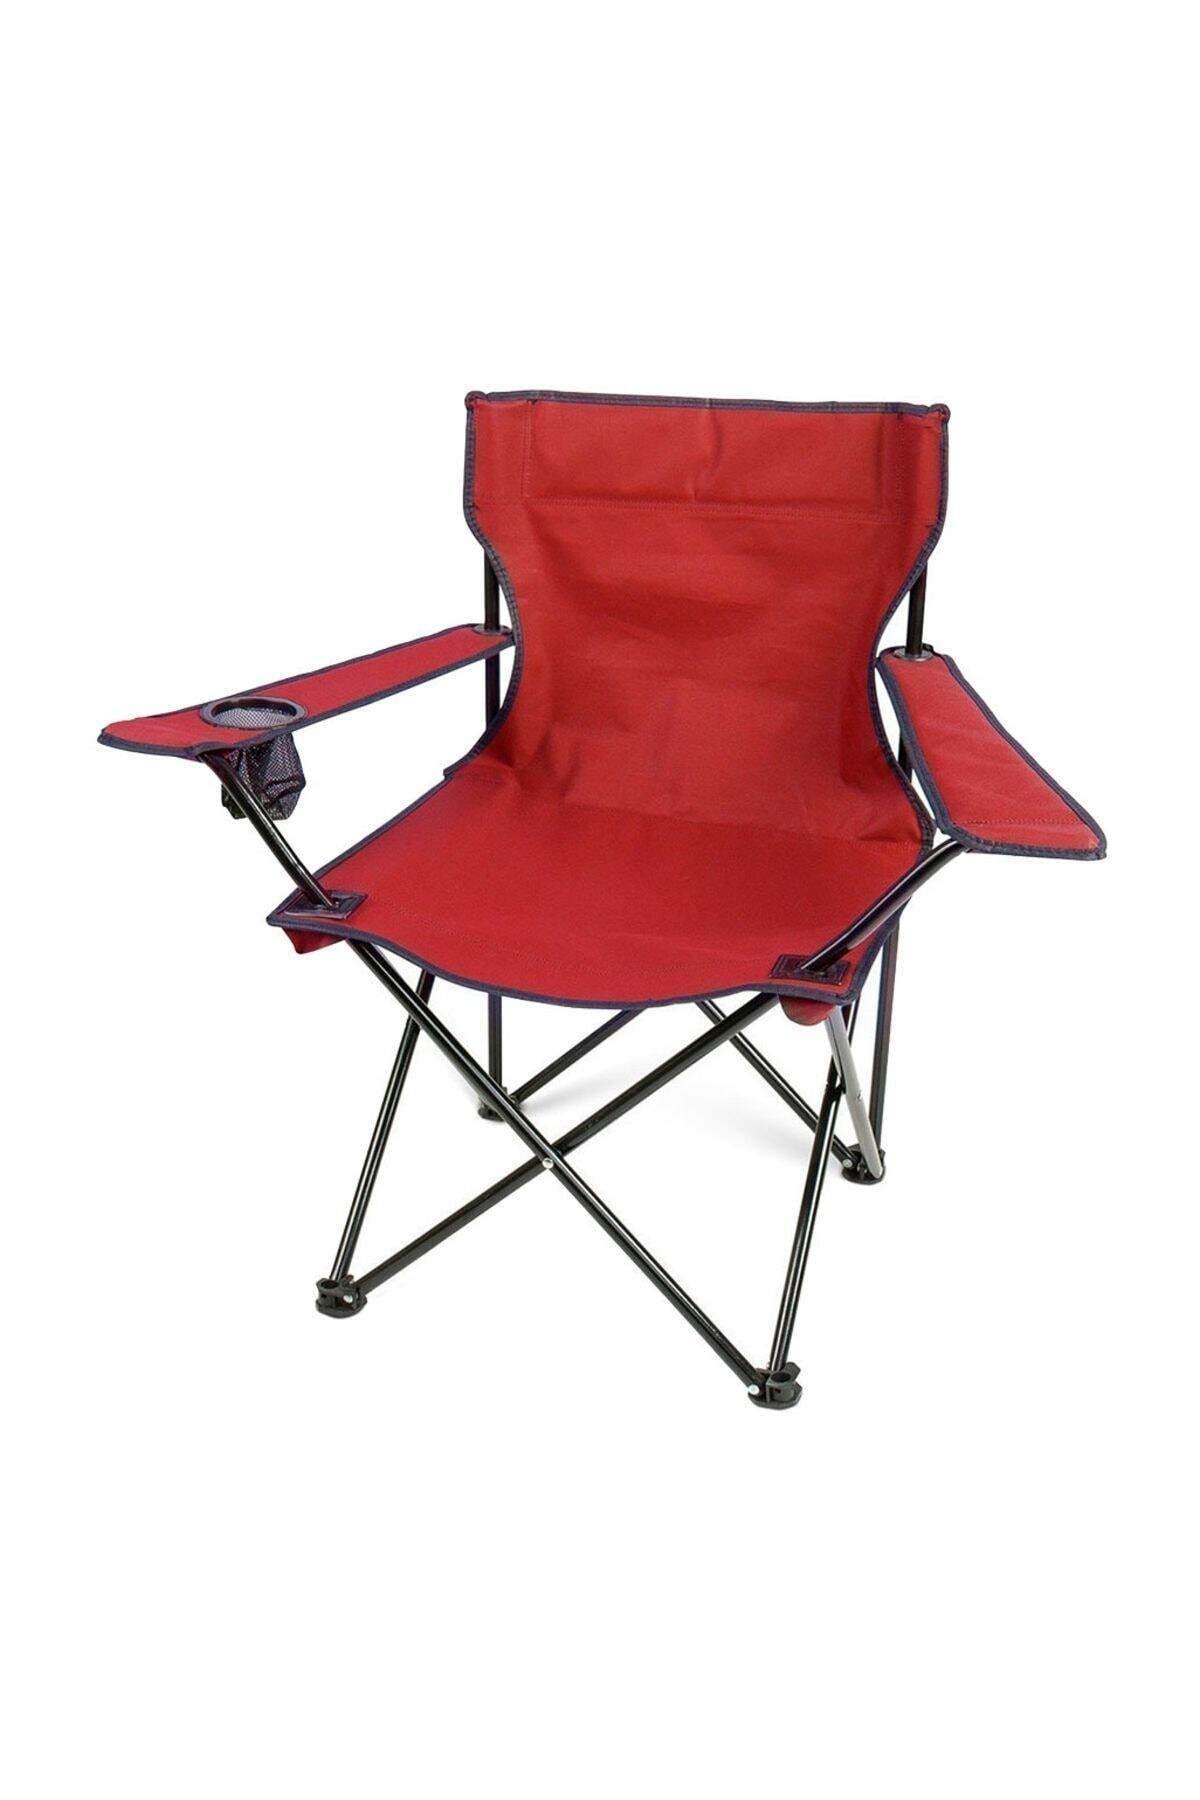 Bofigo Kamp Sandalyesi Katlanır Sandalye Bahçe Koltuğu Piknik Plaj Balkon Sandalyesi Kırmızı.